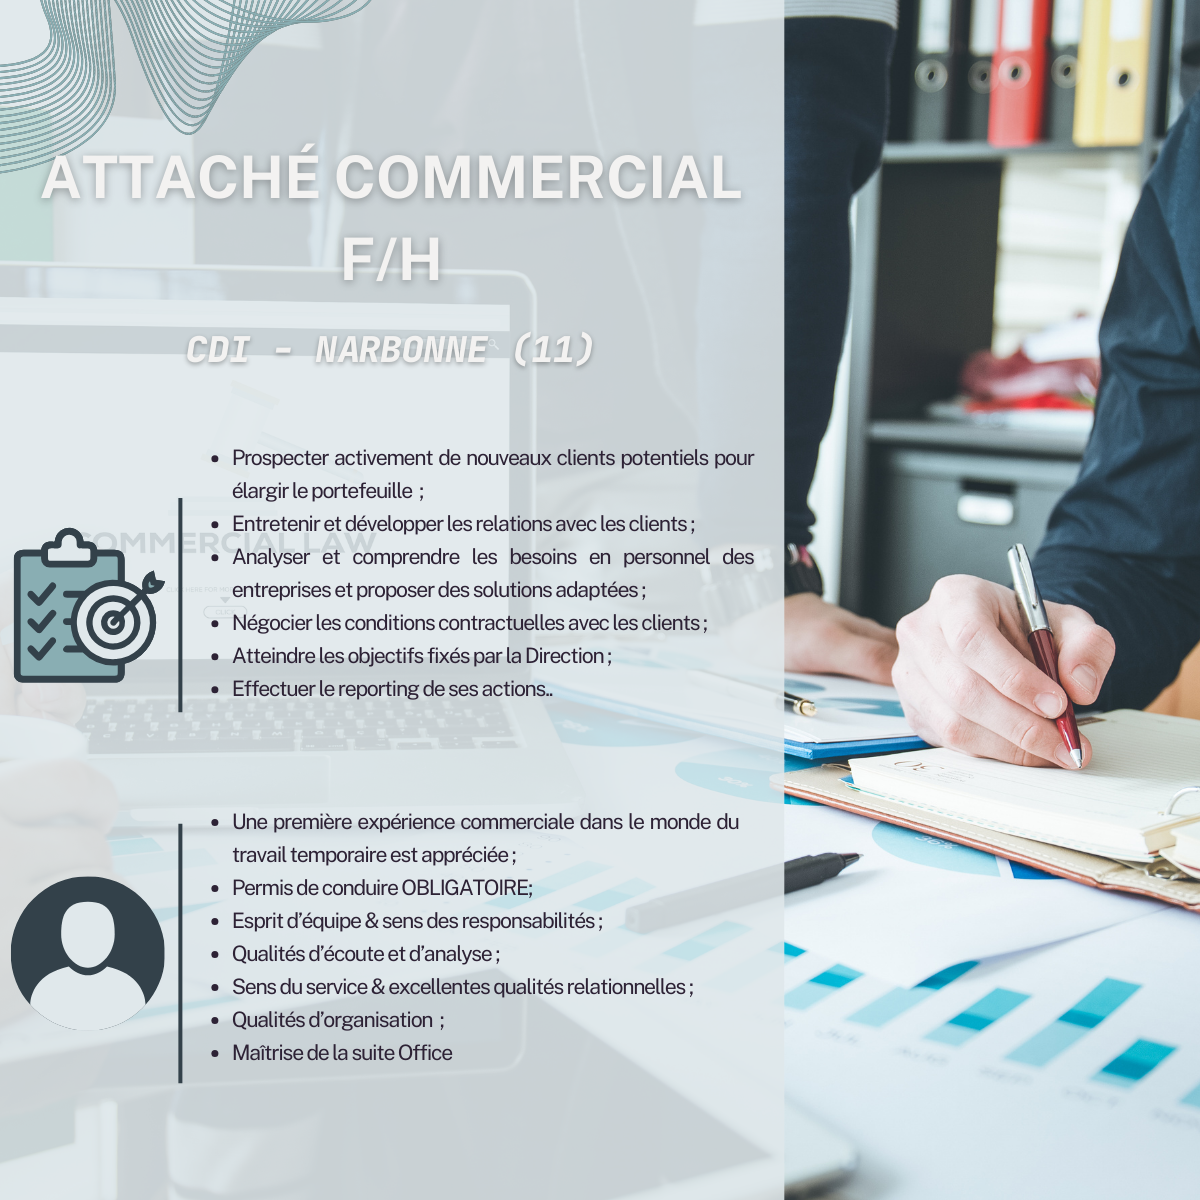 Offre d'emploi Attaché Commercial F/H